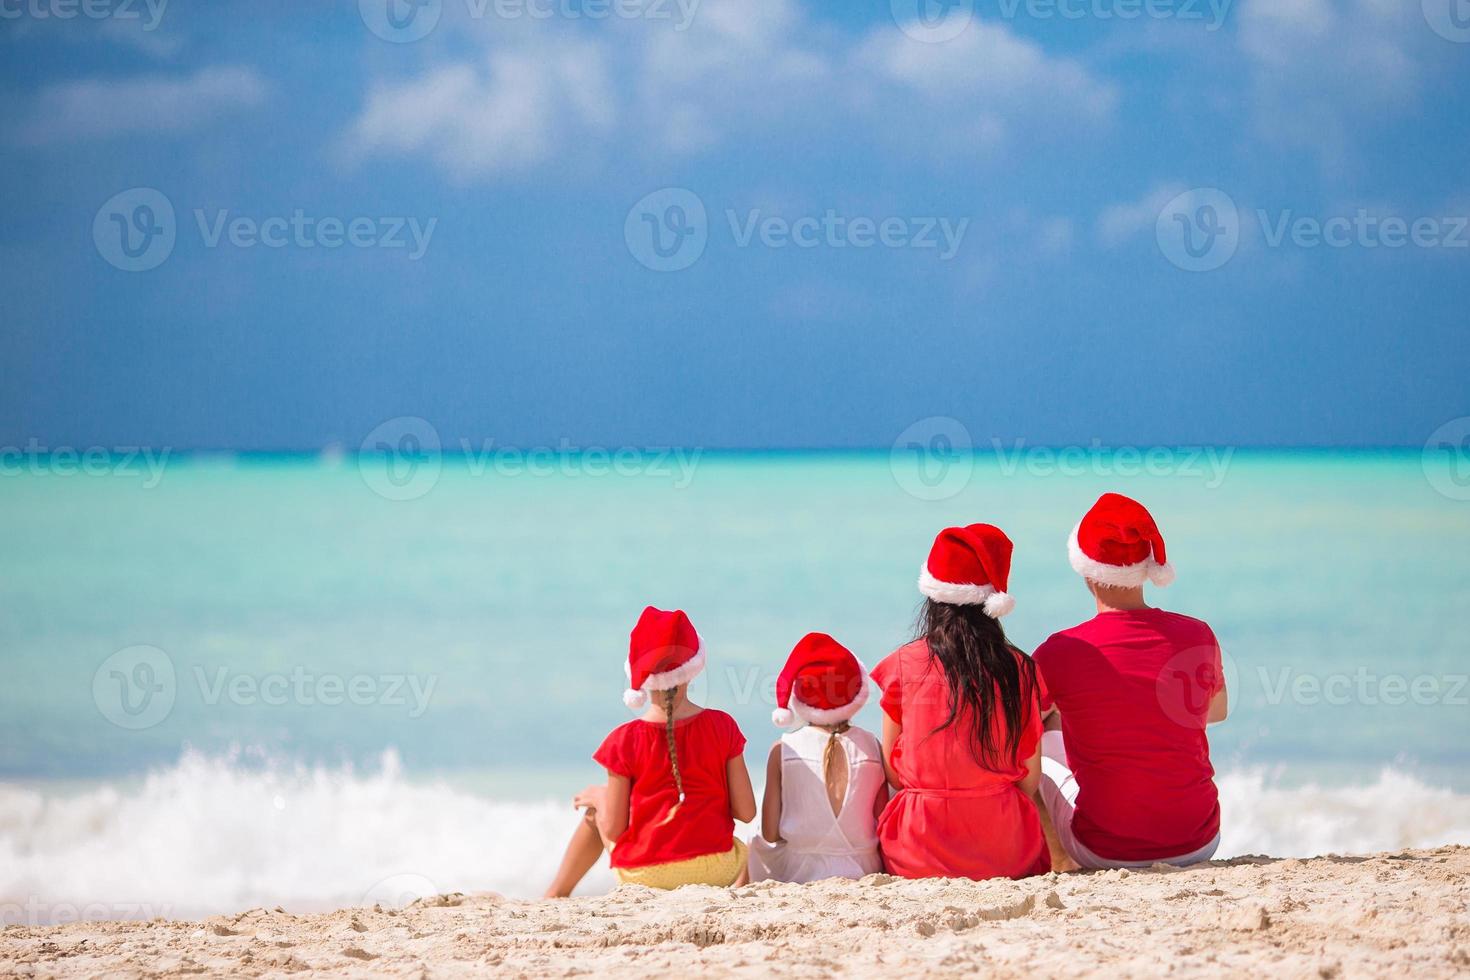 família feliz com dois filhos com chapéu de Papai Noel nas férias de verão foto